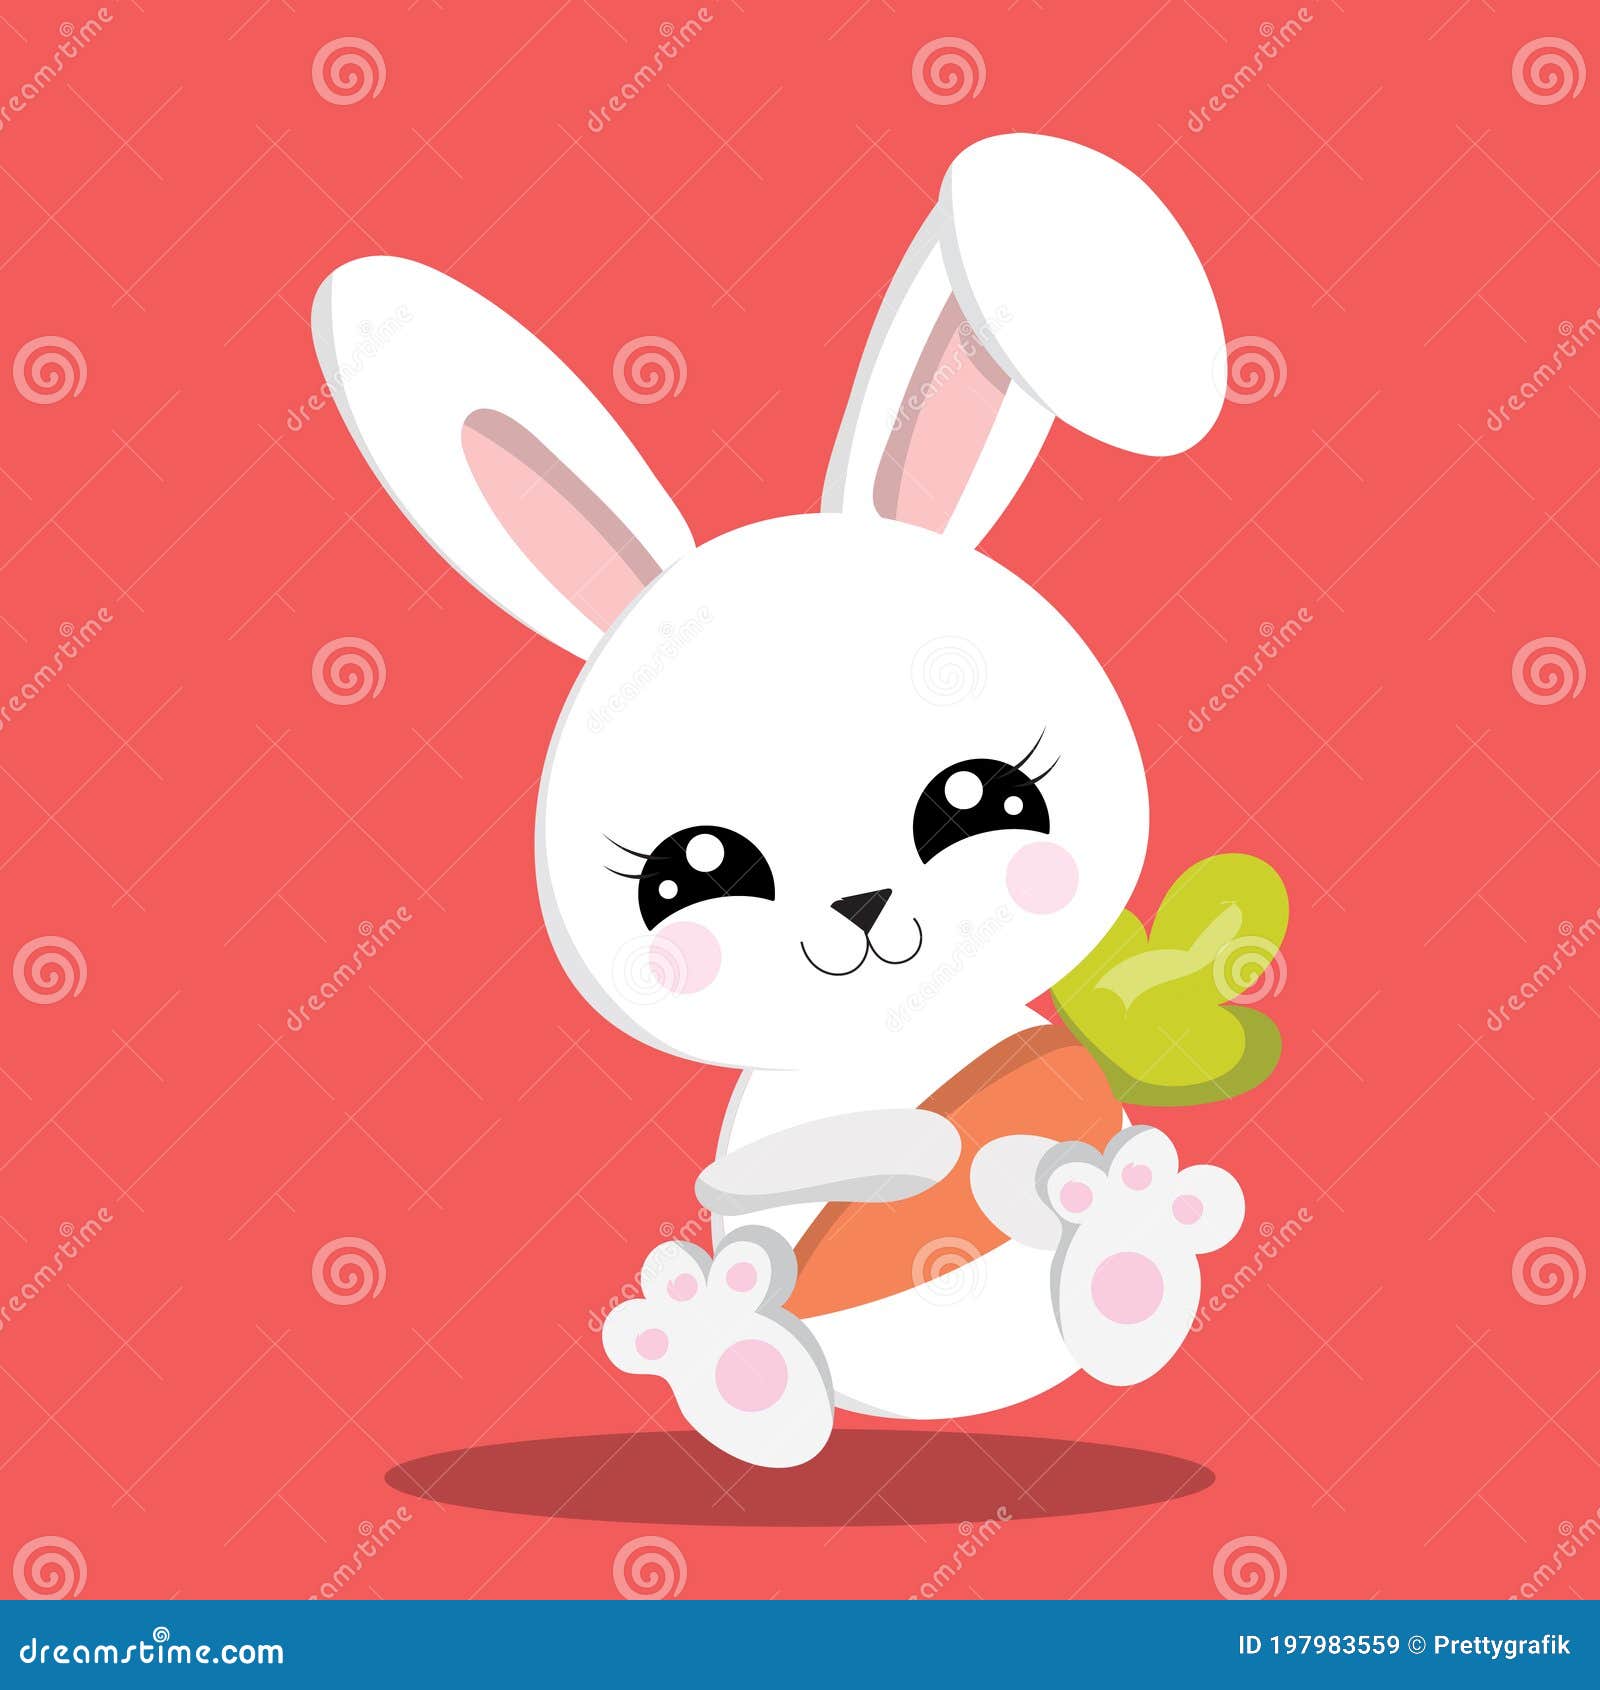 微博红兔史大力(萌兔子史大力)高清桌面壁纸免费下载-东坡下载